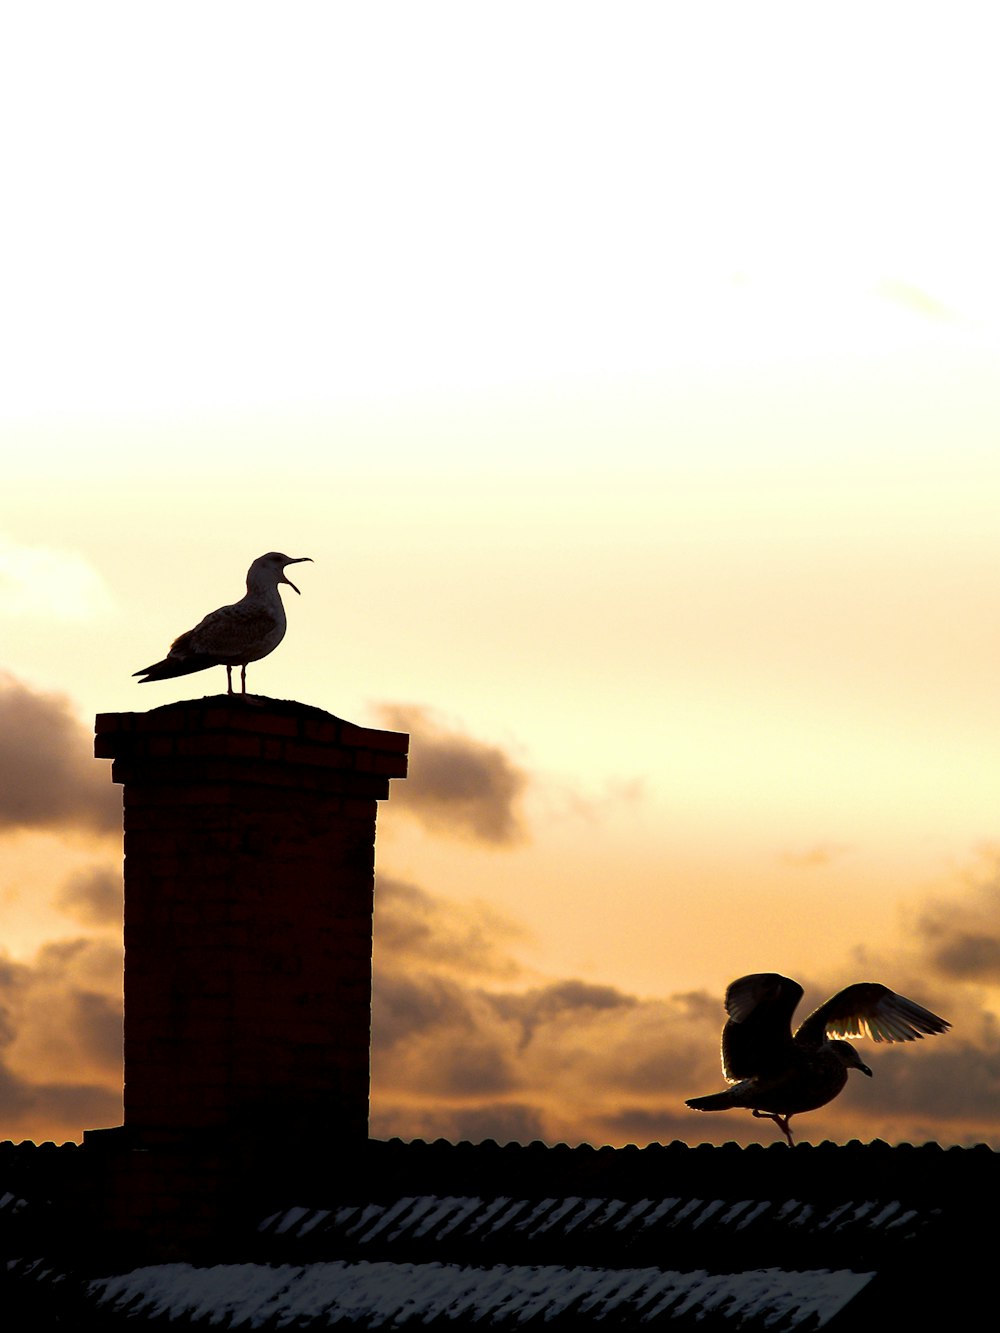 ゴールデンアワーの煙突と屋上に2羽の鳥がいた